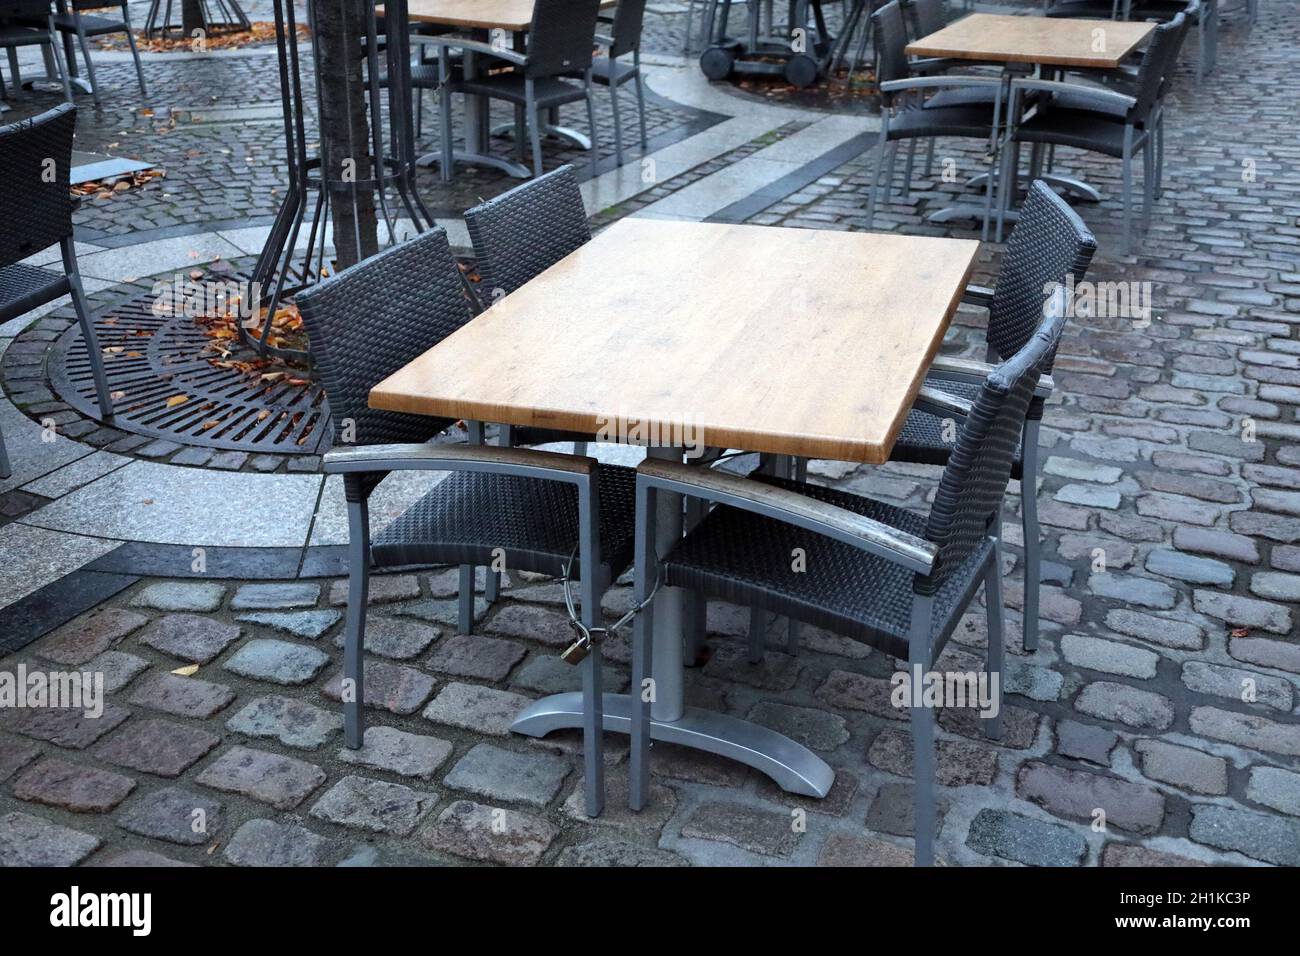 Stühle und Bänke sind verkettet - die Restaurants und Biergärten wieder geschlossen, wie hier in Landau in der Pfalz    Themenbild Markt und Tourismus Stock Photo